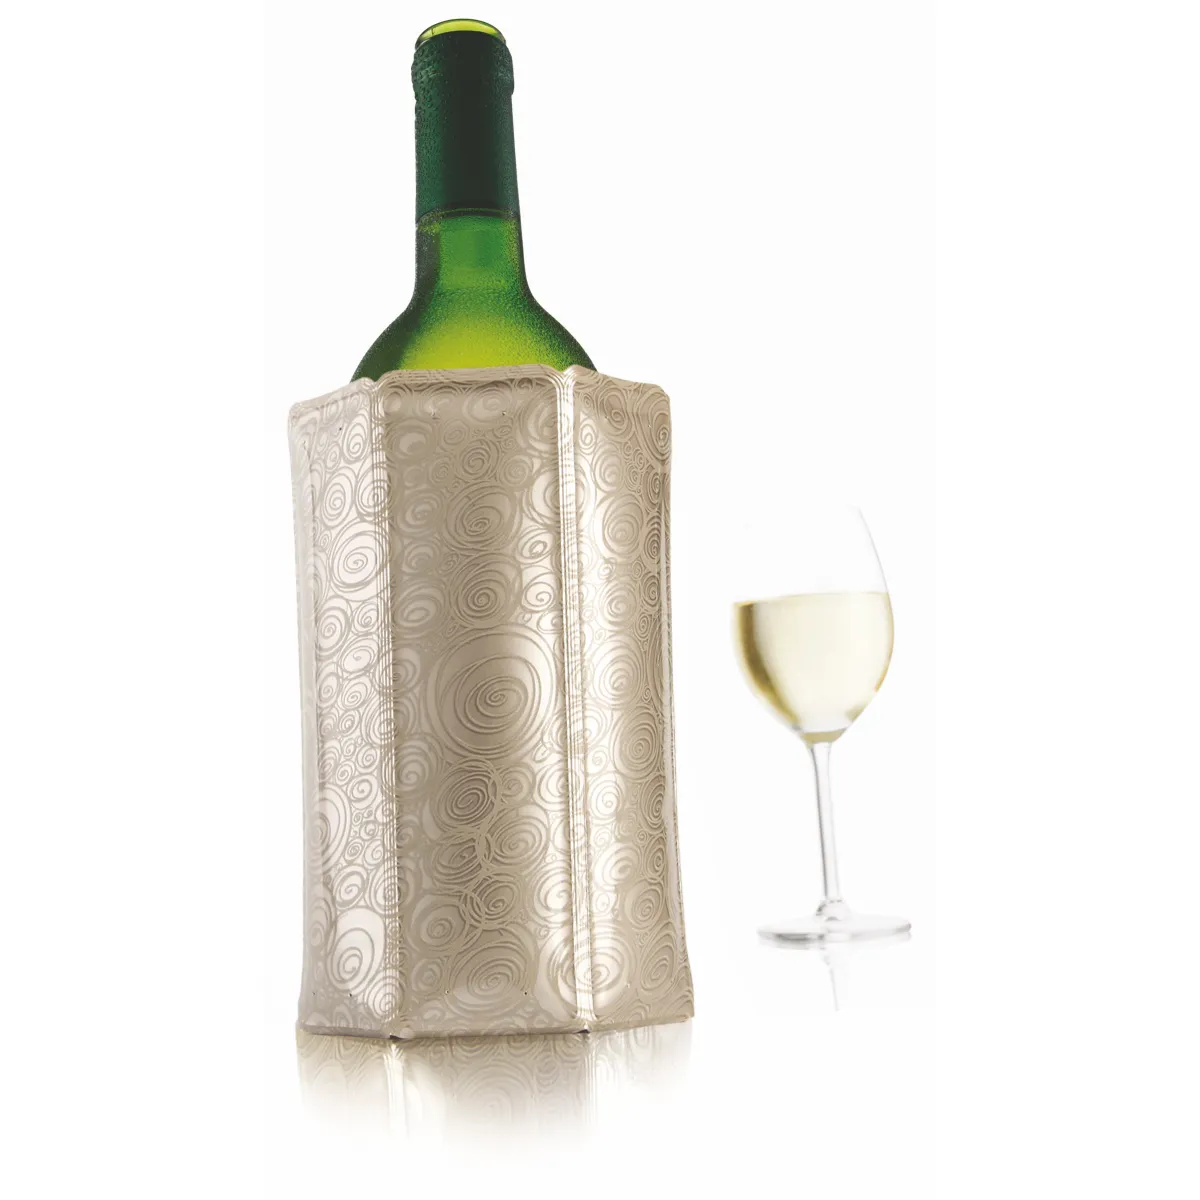 Une bouteille de vin et verre élégants se détachent.